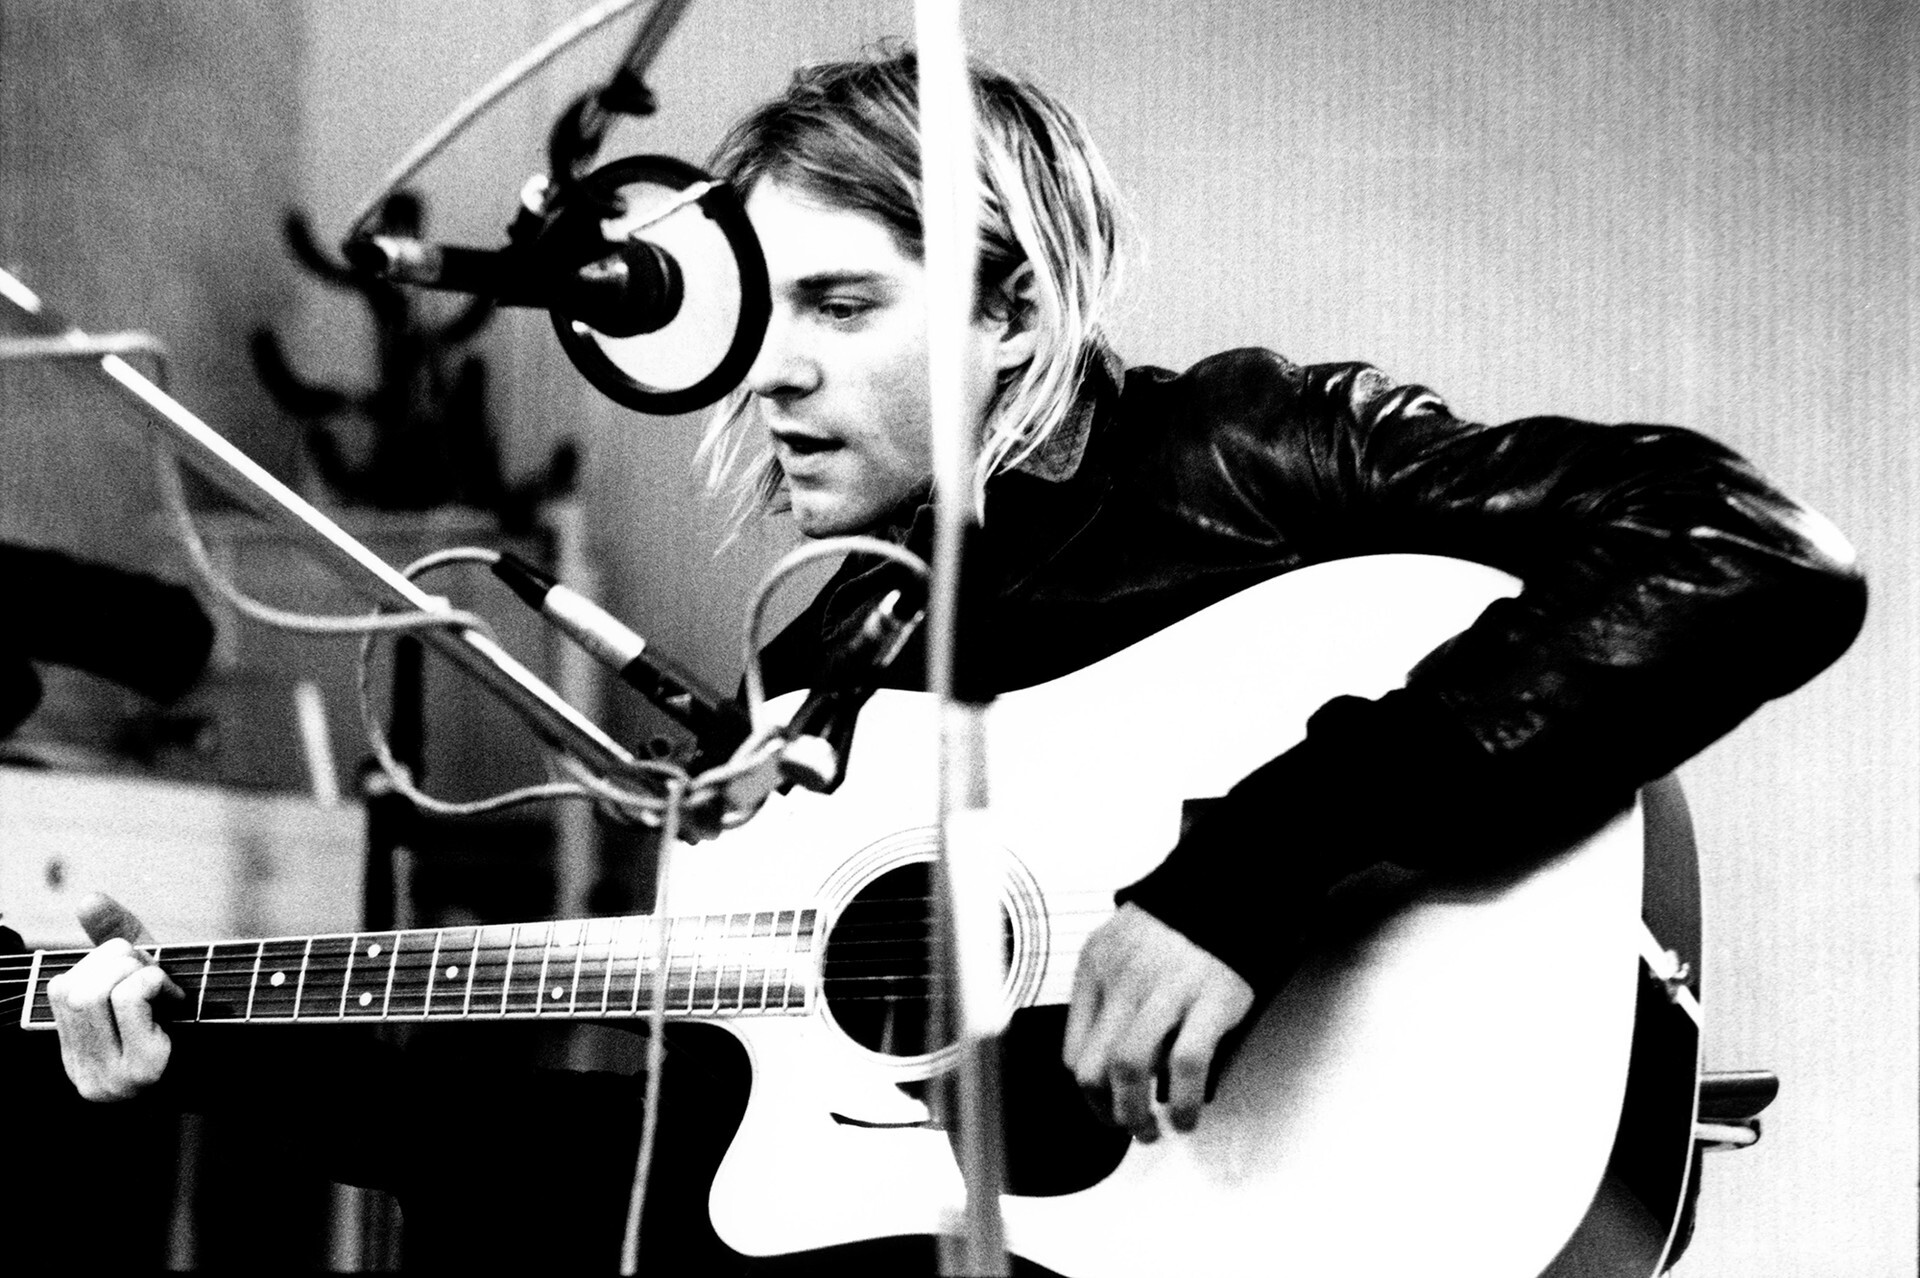 Kurt Cobain de Nirvana (le micro ici présenté n'est pas produit par l'usine Oktava)